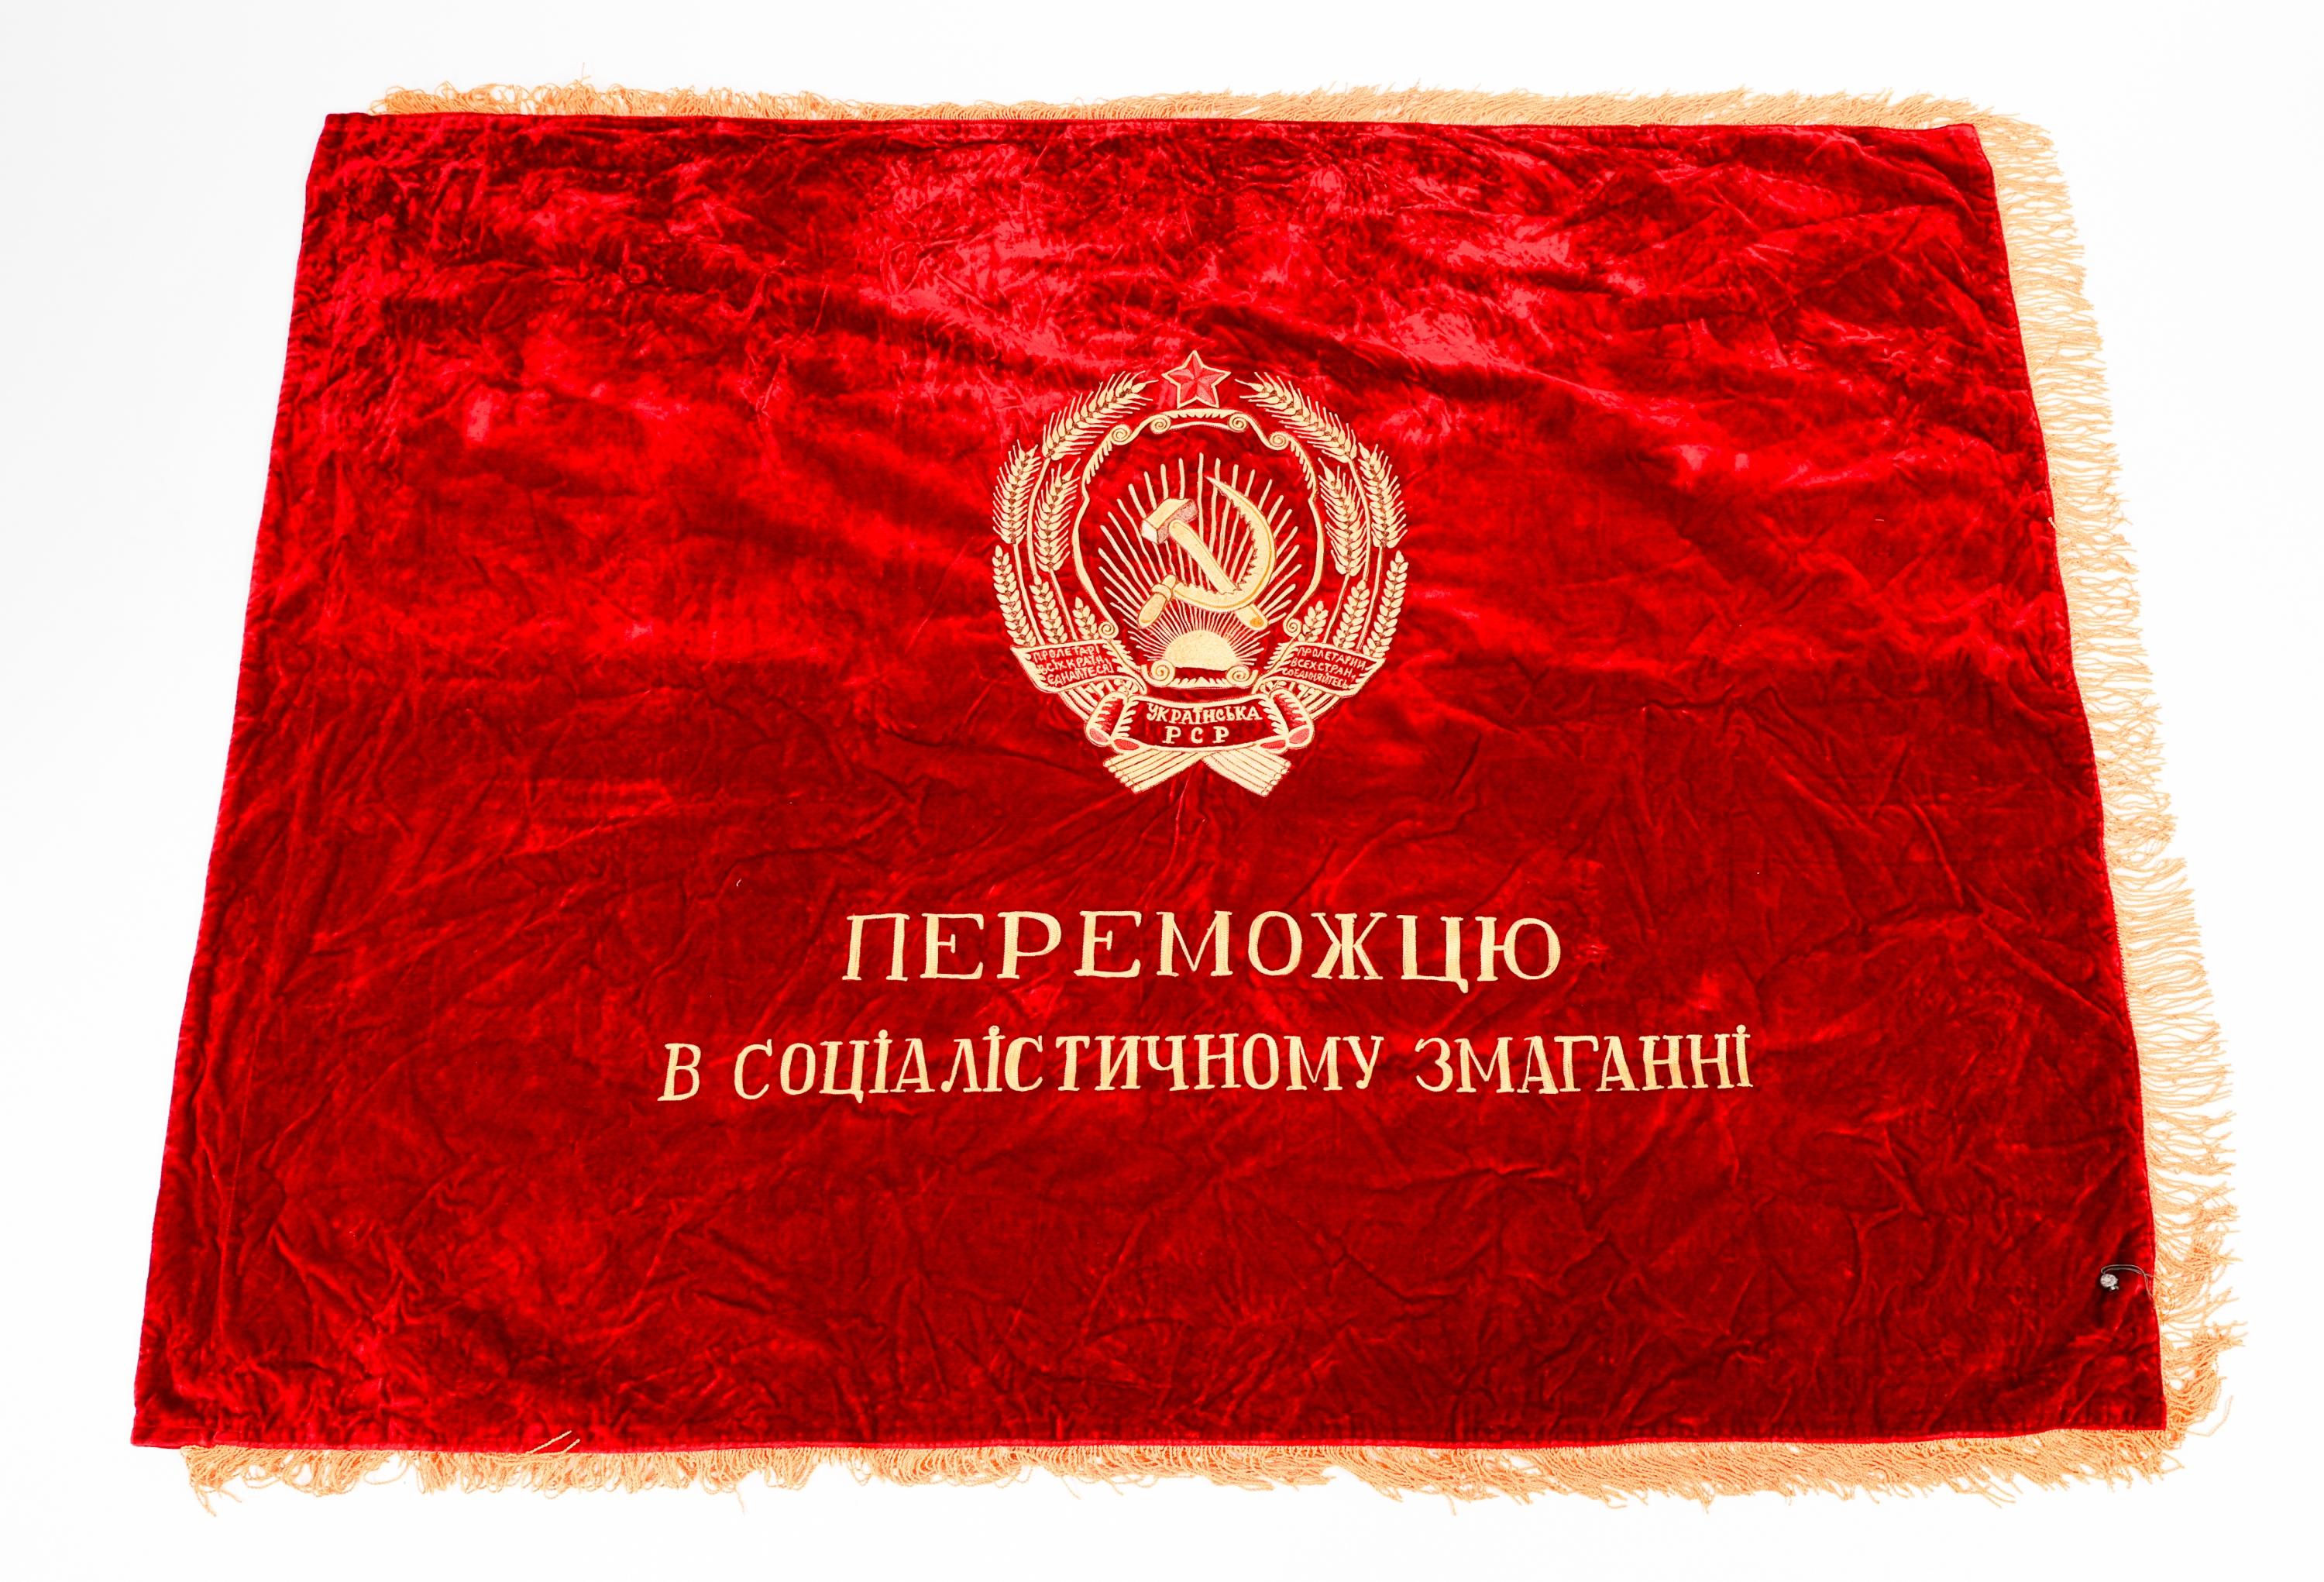 COLD WAR SOVIET UNION UKRAINIAN SSR VELVET BANNER